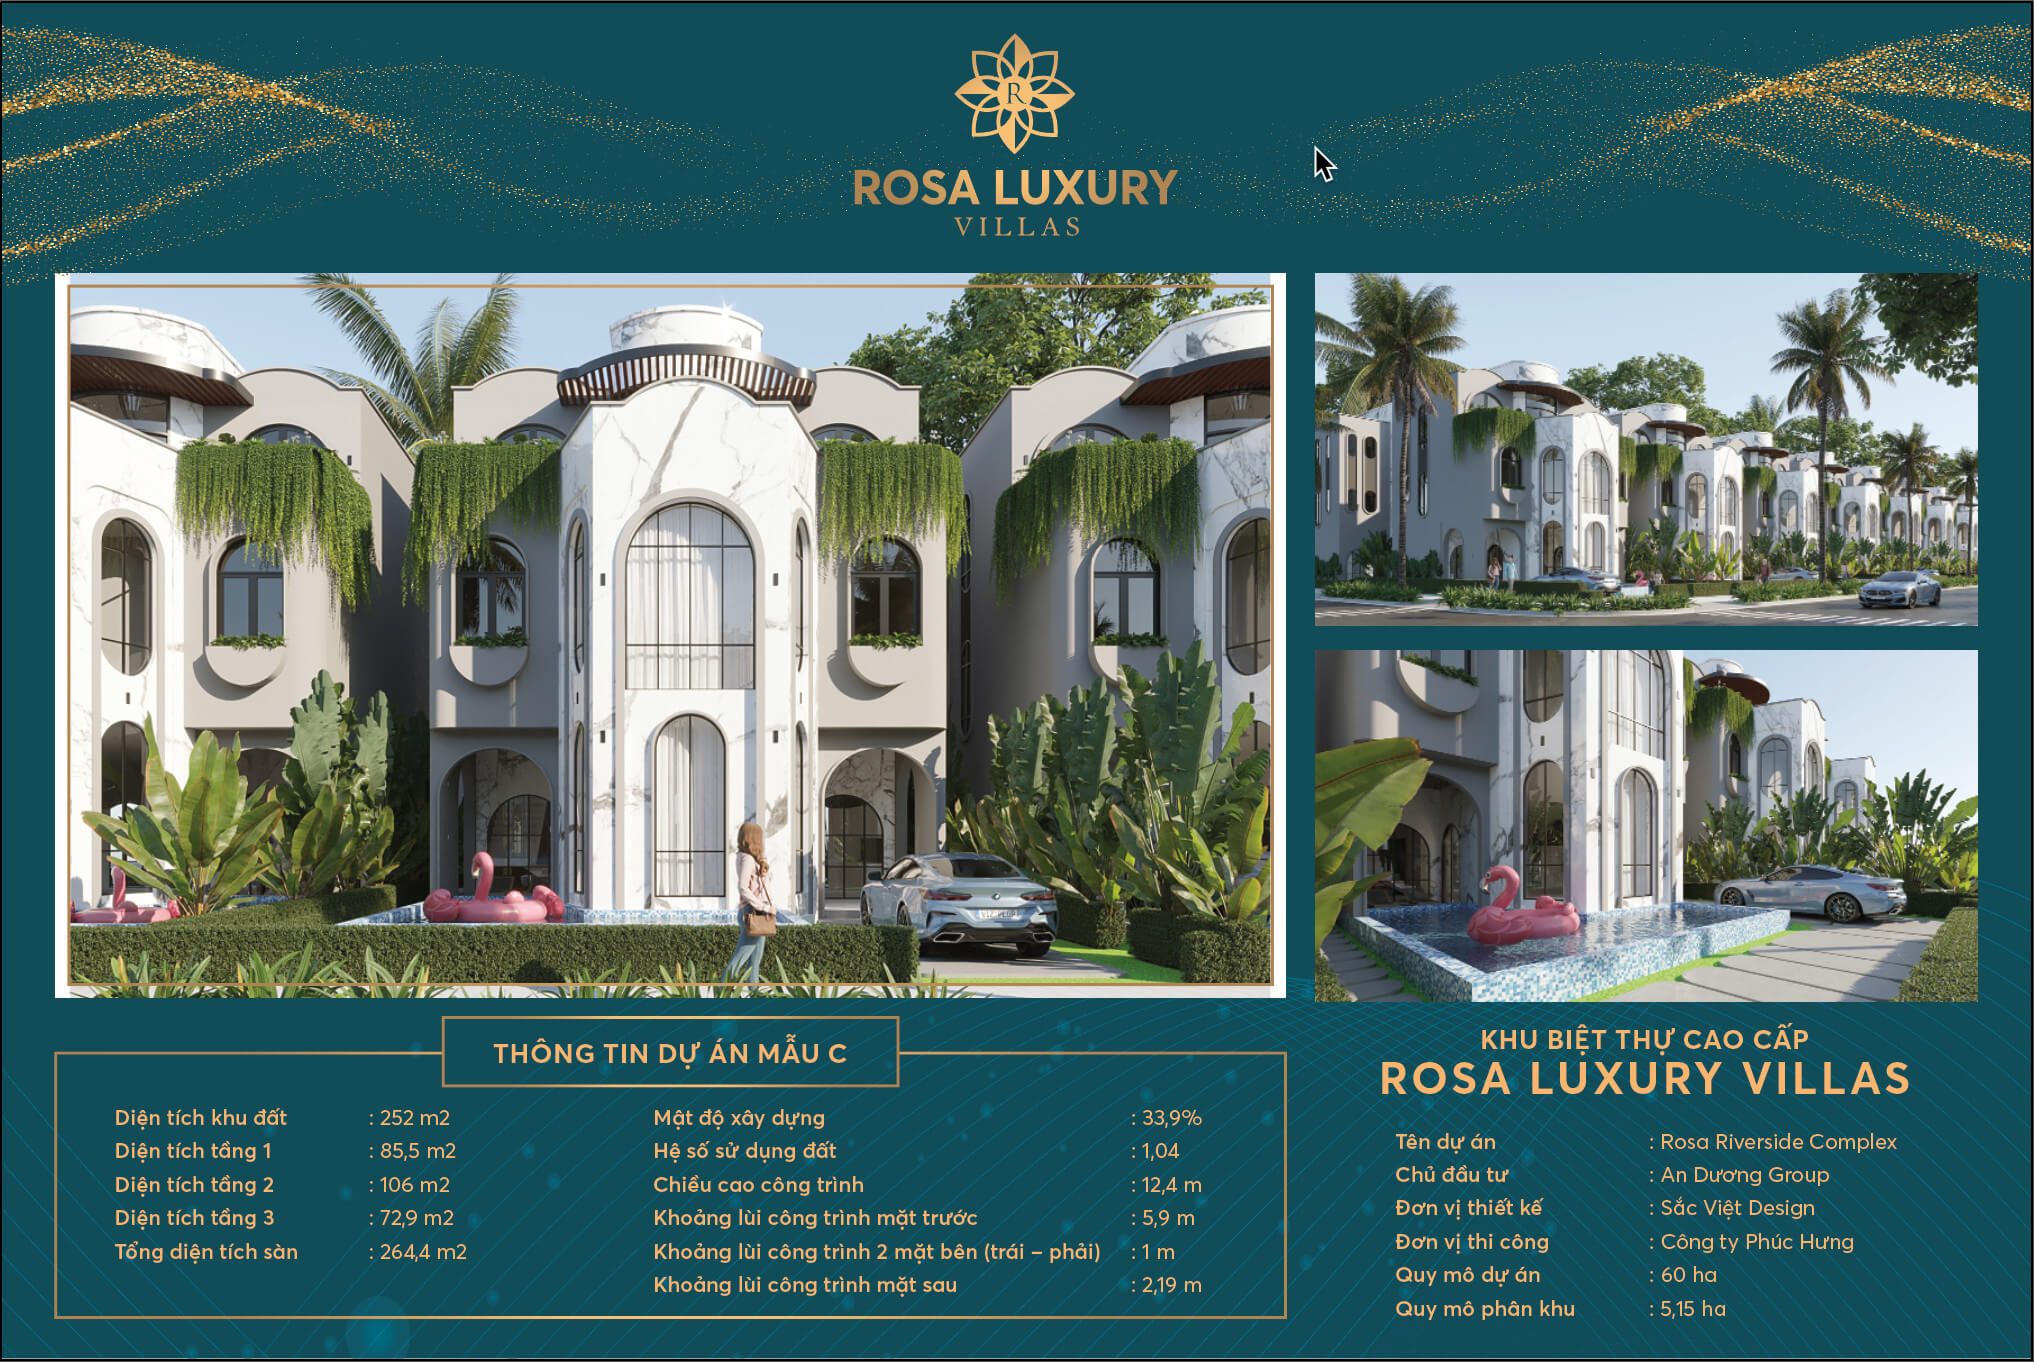 thiết kế biệt thự rosa luxury villas quảng nam mẫu c